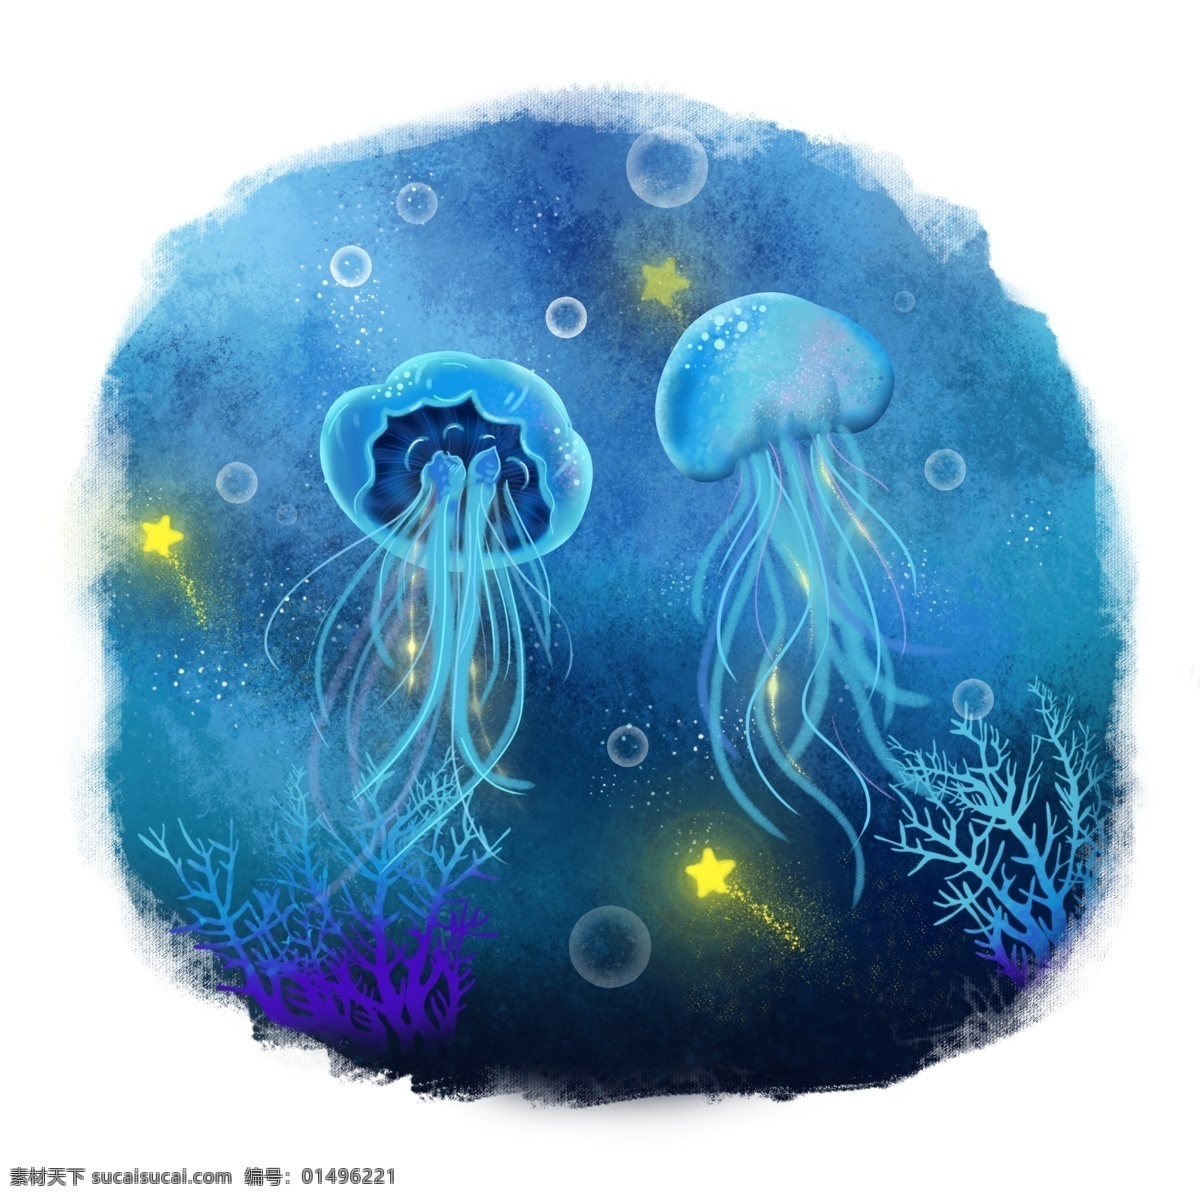 世界 海洋 日 动物 水母 手绘 海底 世界海洋日 植物 海底世界 装饰